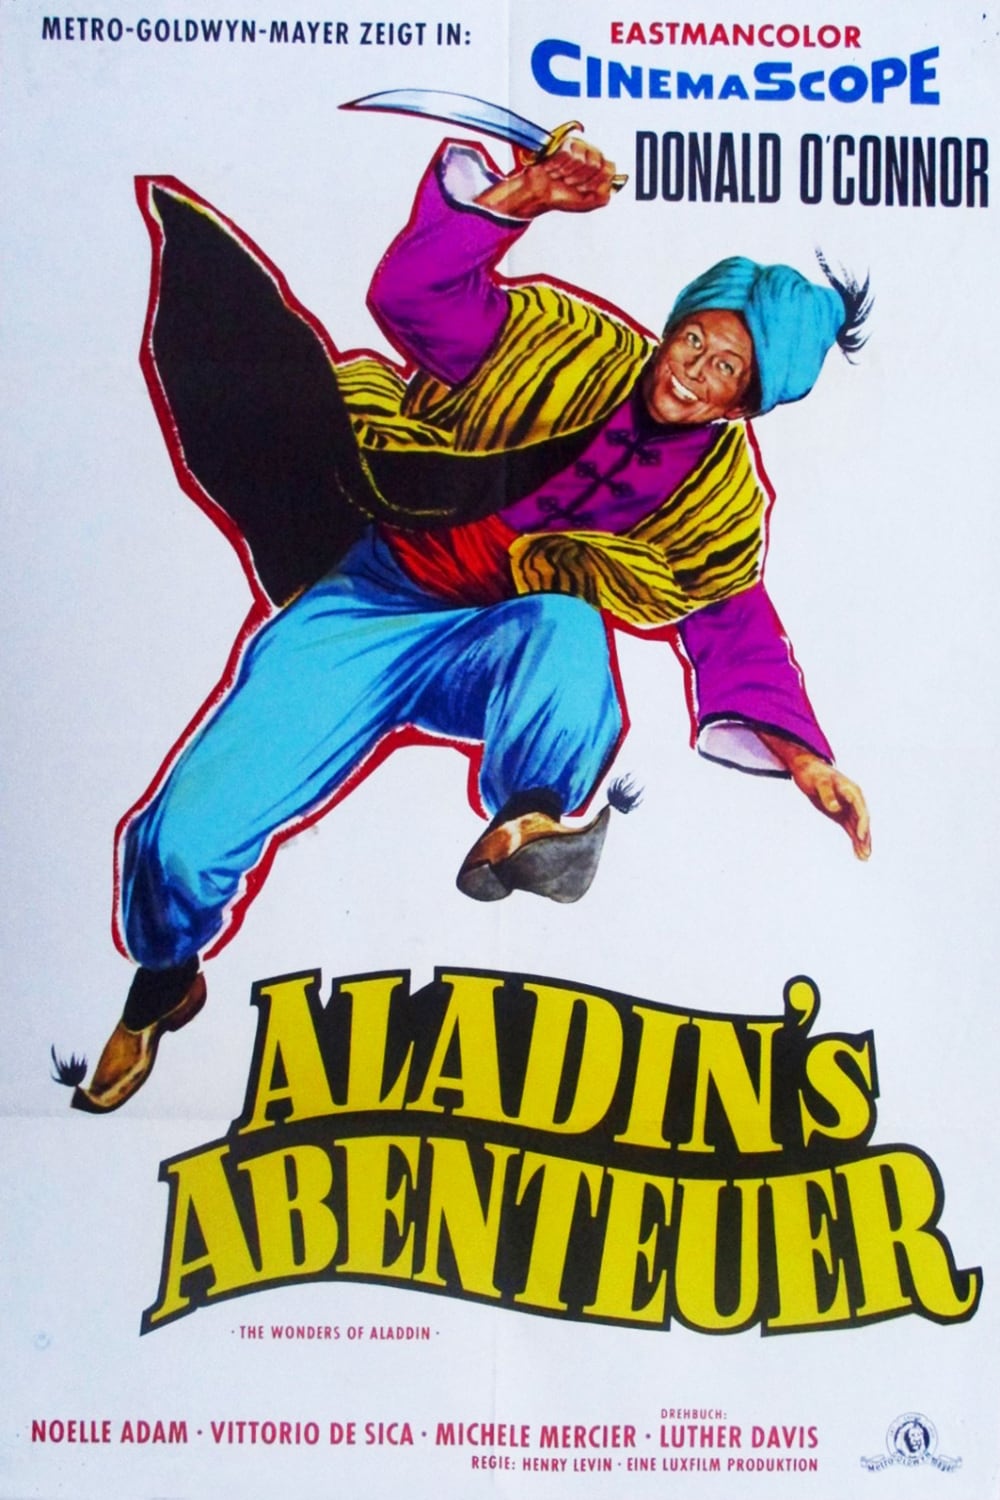 Plakat von "Aladins Abenteuer"